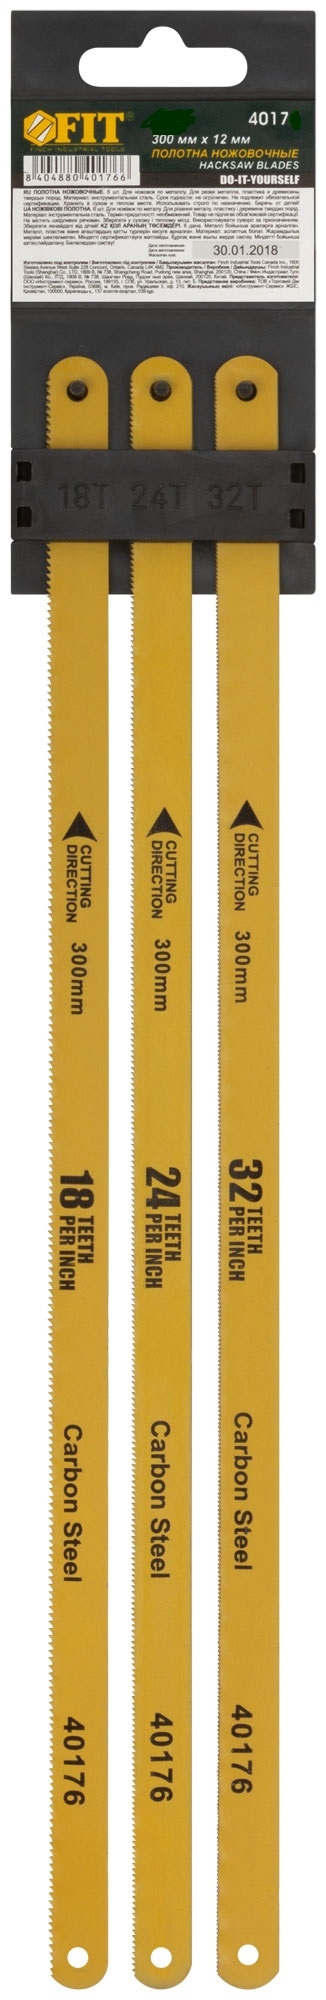 Полотна ножовочные по металлу, 300 мм, (18ТPI+24ТPI+32ТPI/20Cr ), 3 шт. FIT 40175 пильные полотна по металлу для ножовки gross